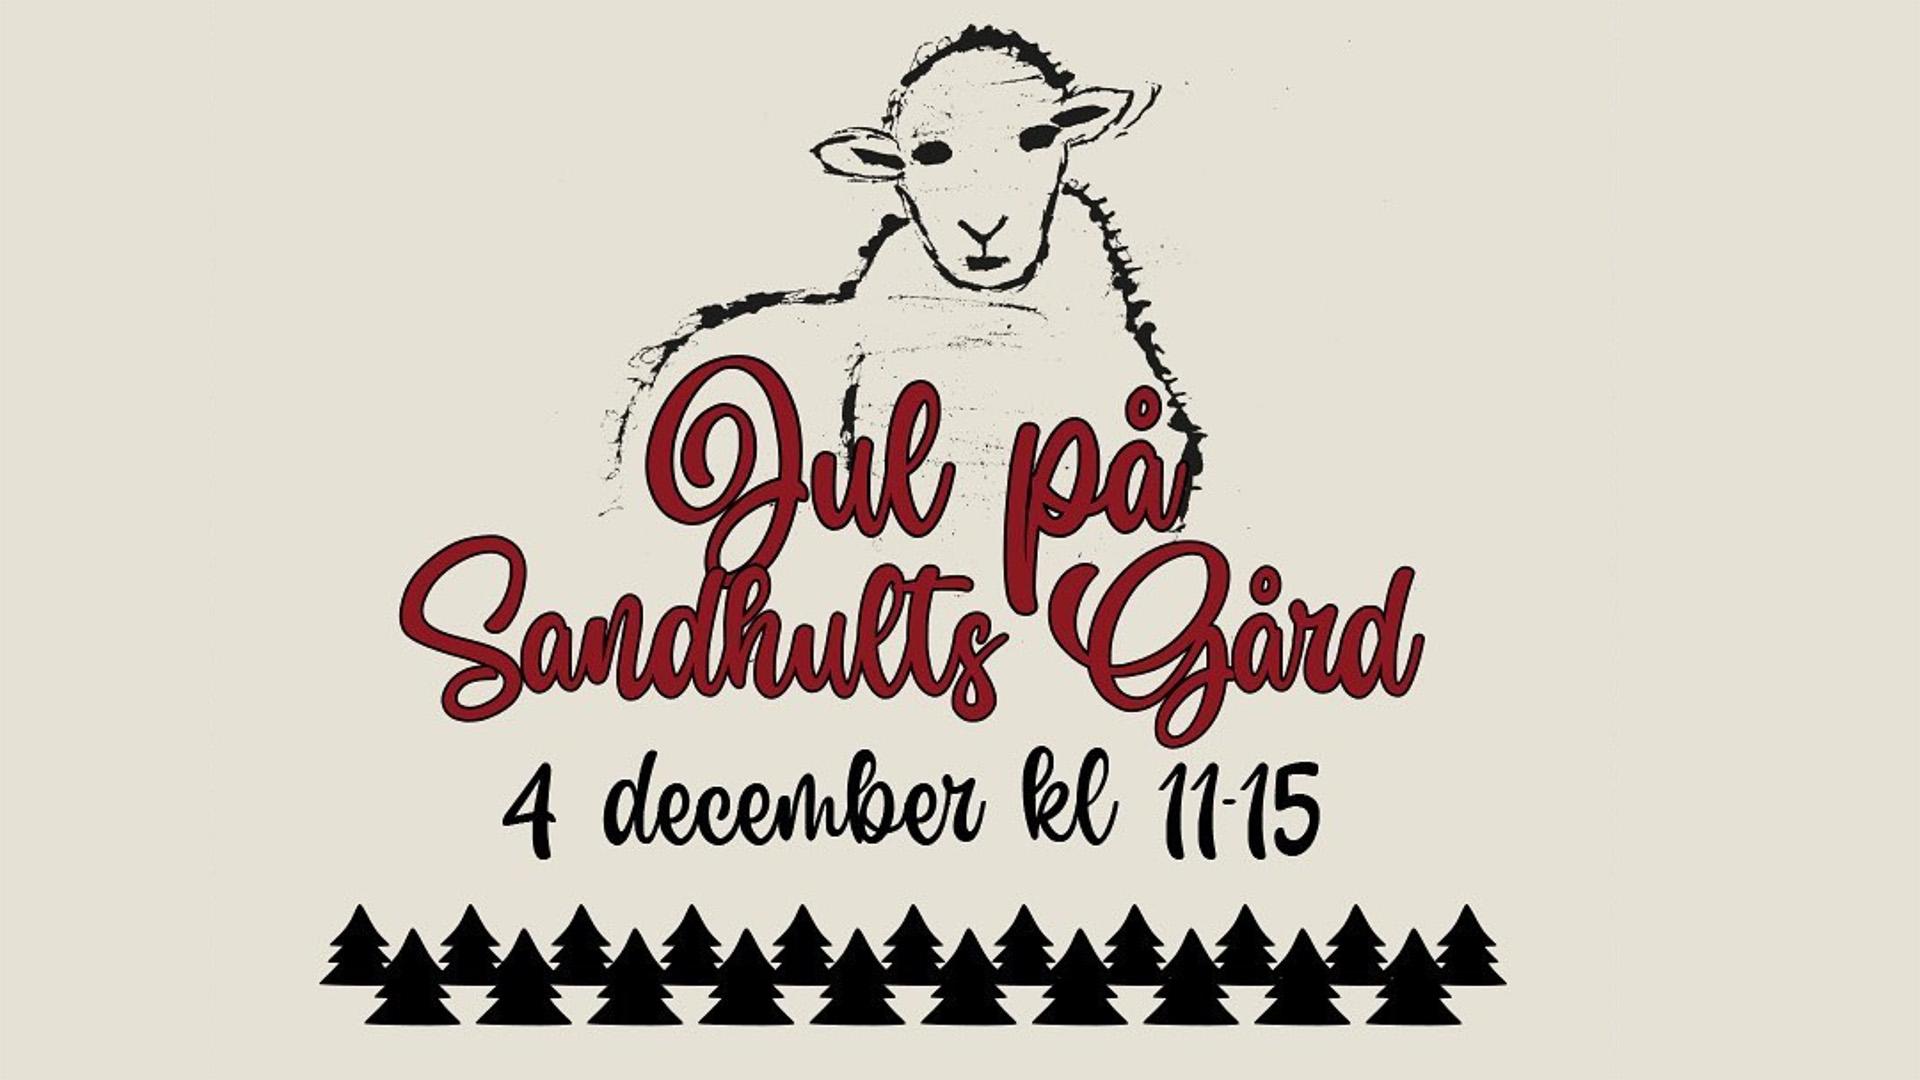 En grafisk bild med ett ritat får och texten "jul på Sandhults gård".